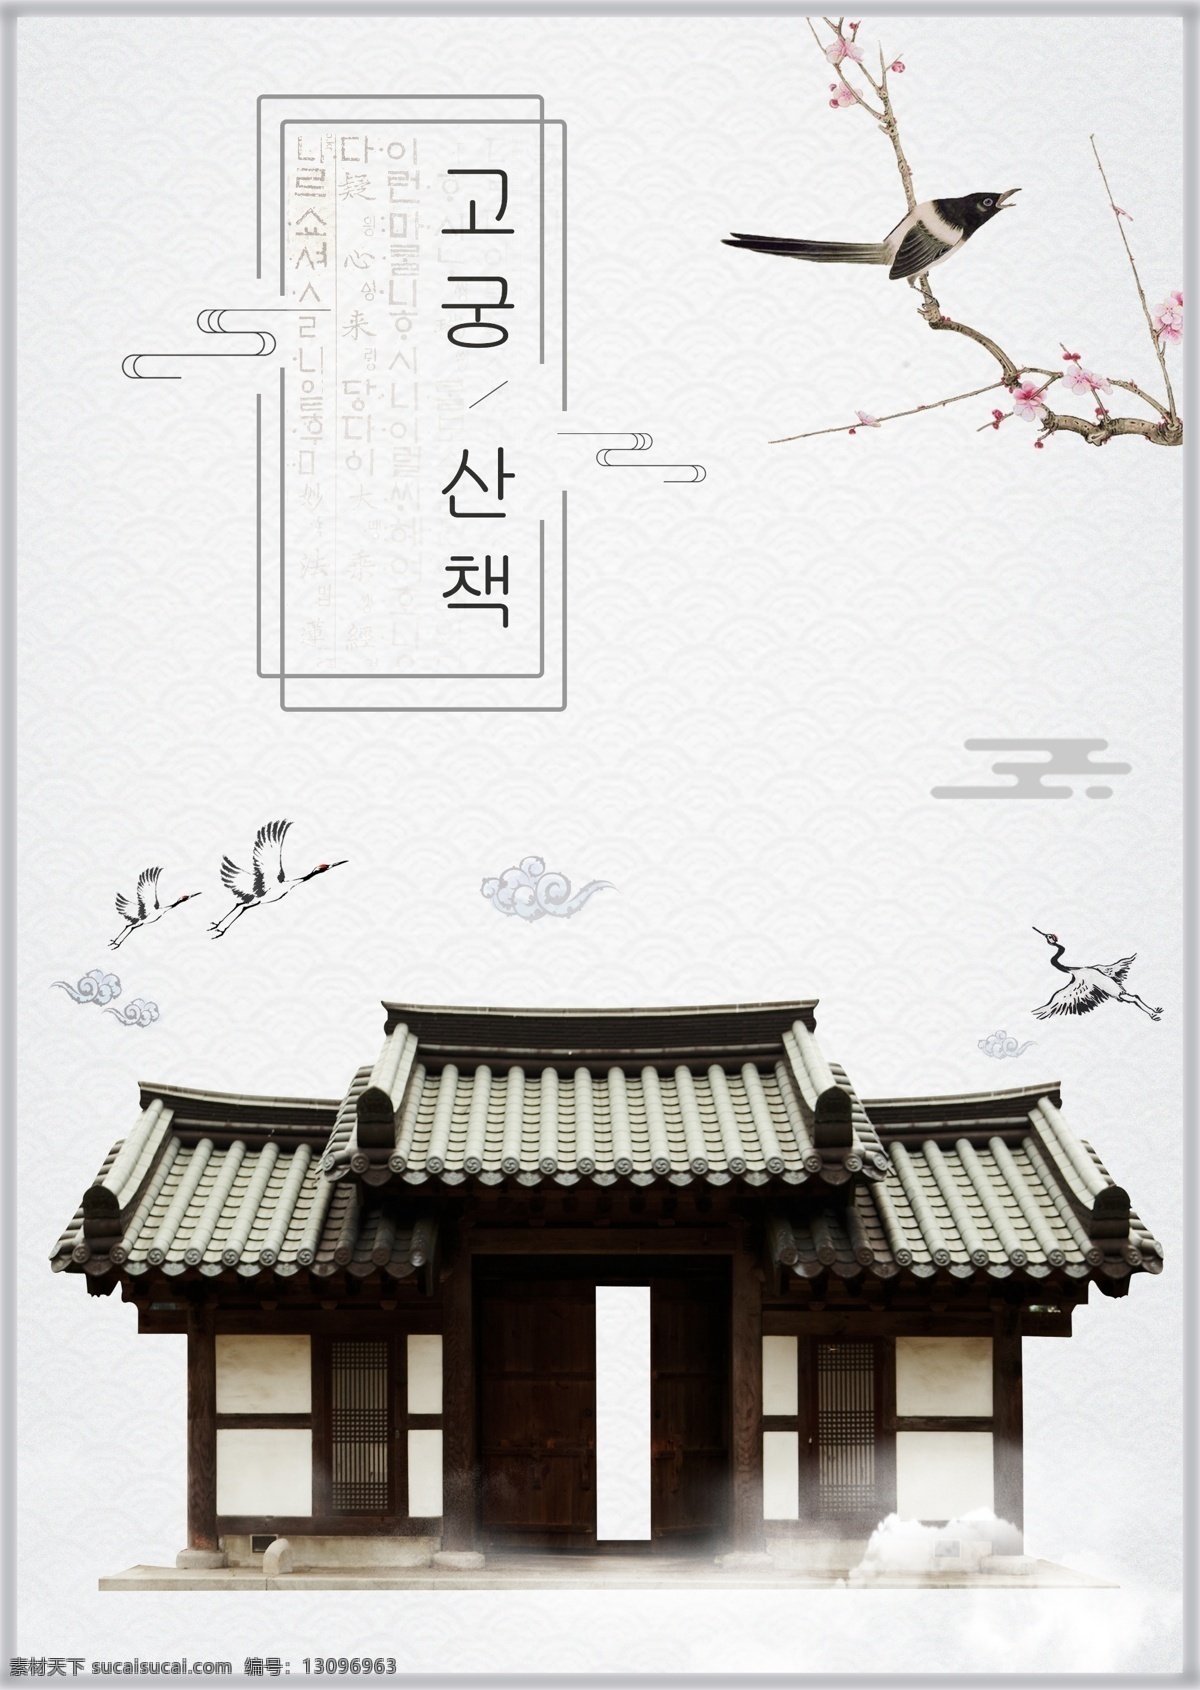 白色 简单 墨水 古老 大厦 冬天 海报 古典 极简主义 墨 冬季 朝鲜的 中文 英语 美丽 灰色 新年 松树 雪 粉 建筑 鸟类